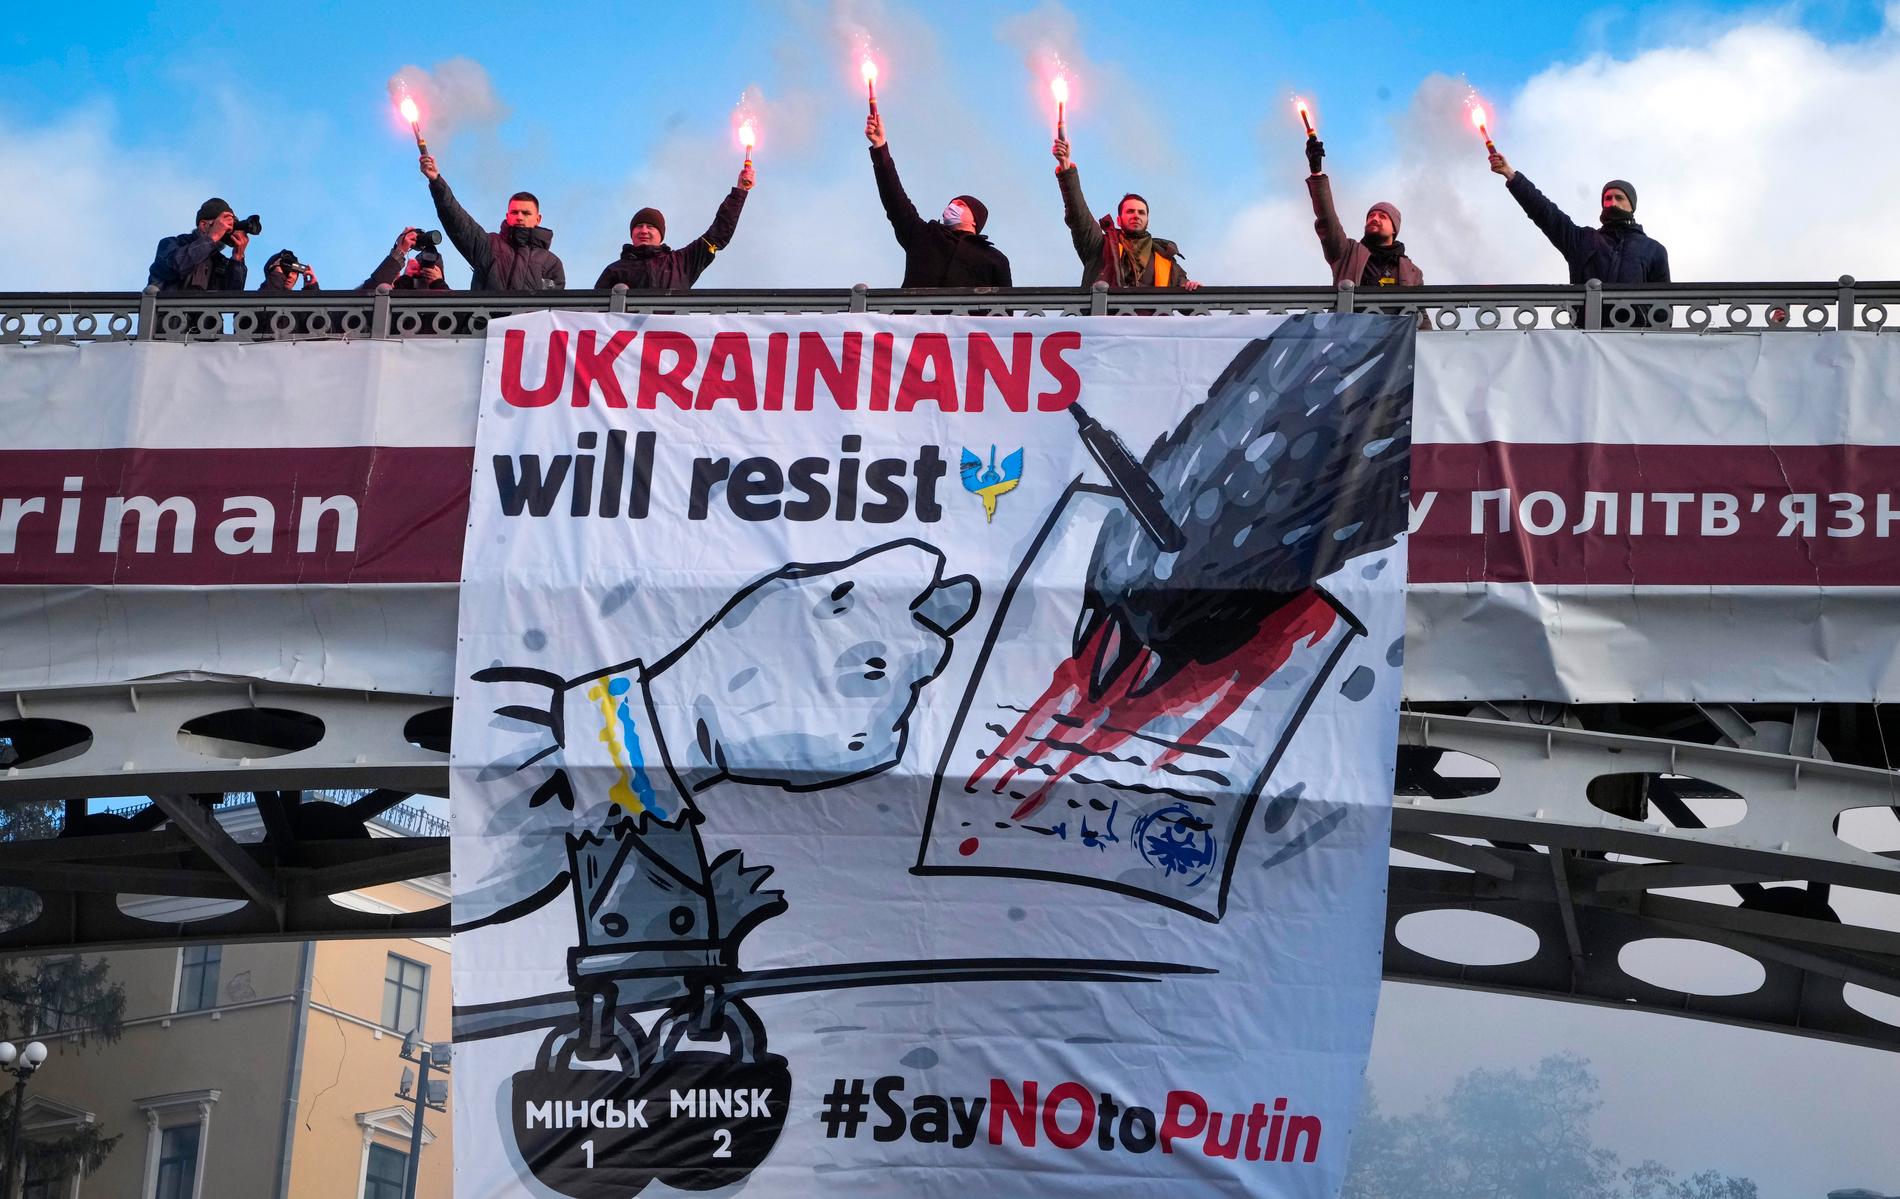 Under lördagen demonstrerar tusentals ukrainare i centrala Kiev mot den potentiella eskaleringen av spänningen mellan Ryssland och Ukraina. Spänningarna kring en eventuell förestående invasion av Ukraina eskalerade kraftigt i slutet av veckan.